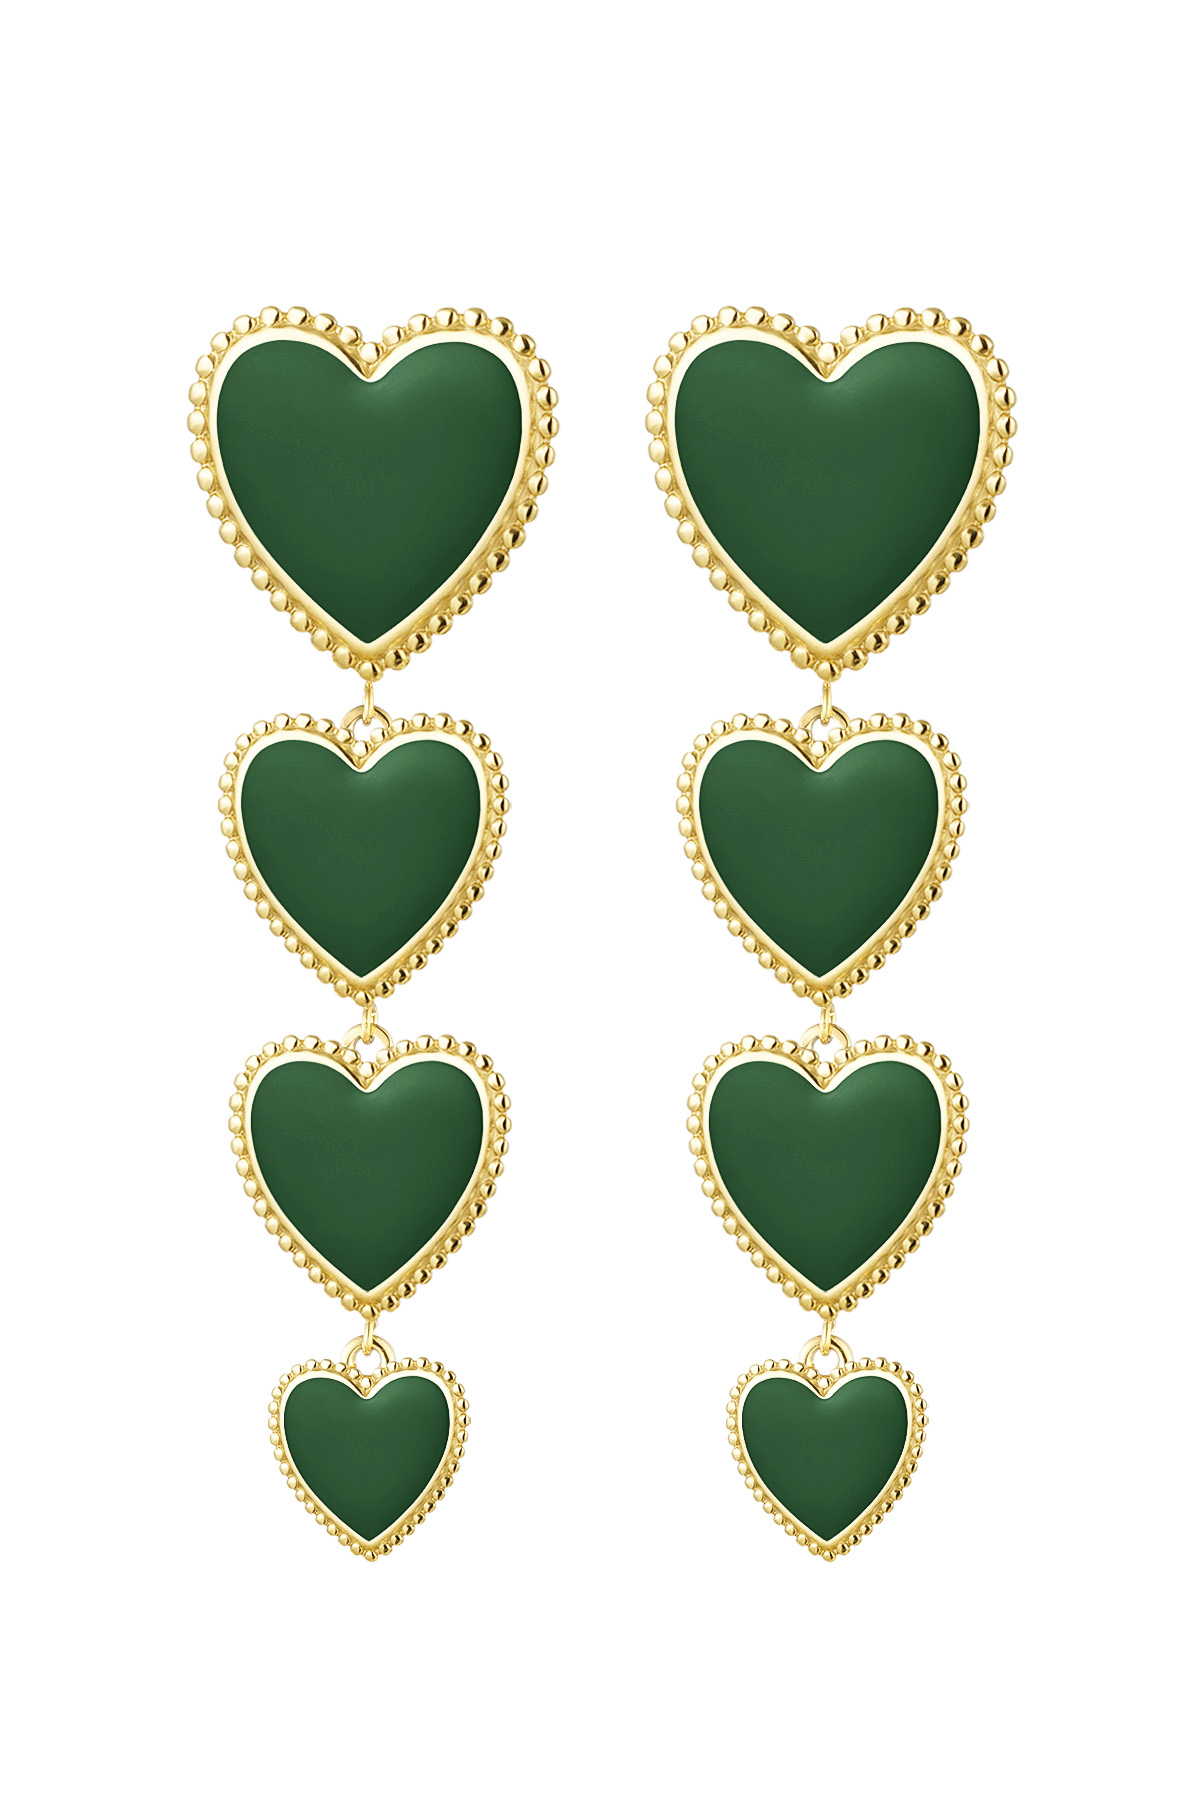 Ohrringe 4 Herzen in einer Reihe - grün